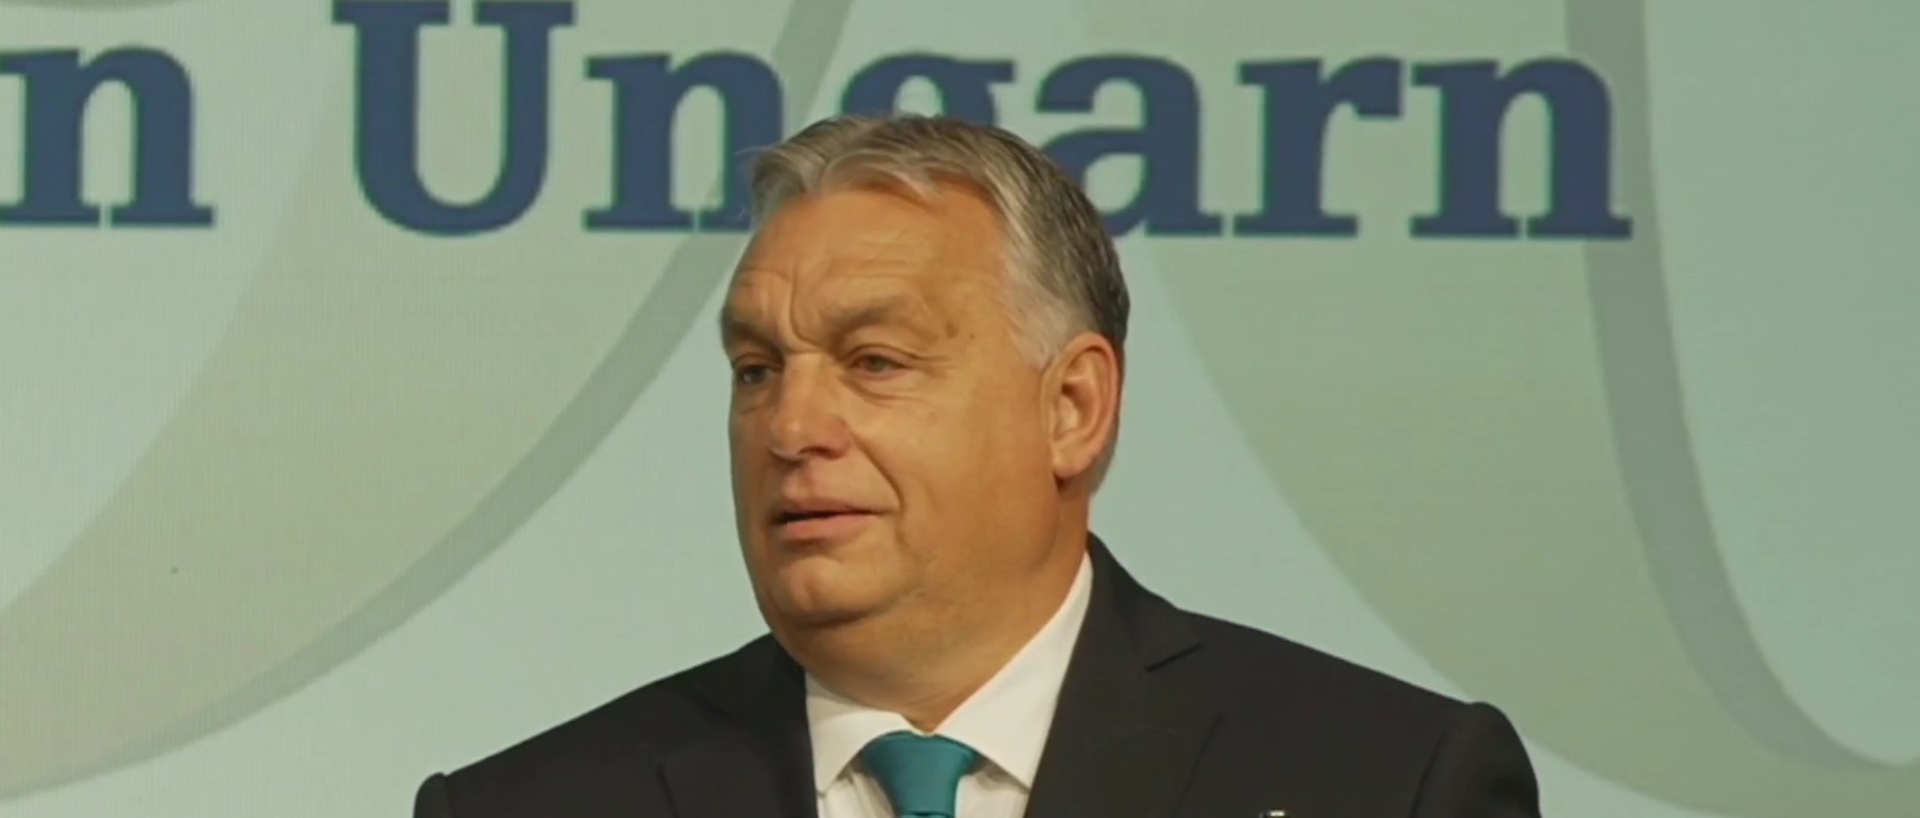 Der ungarische Ministerpräsident Viktor Orbán bei seiner Rede im Hotel Dolder Grand in Zürich.